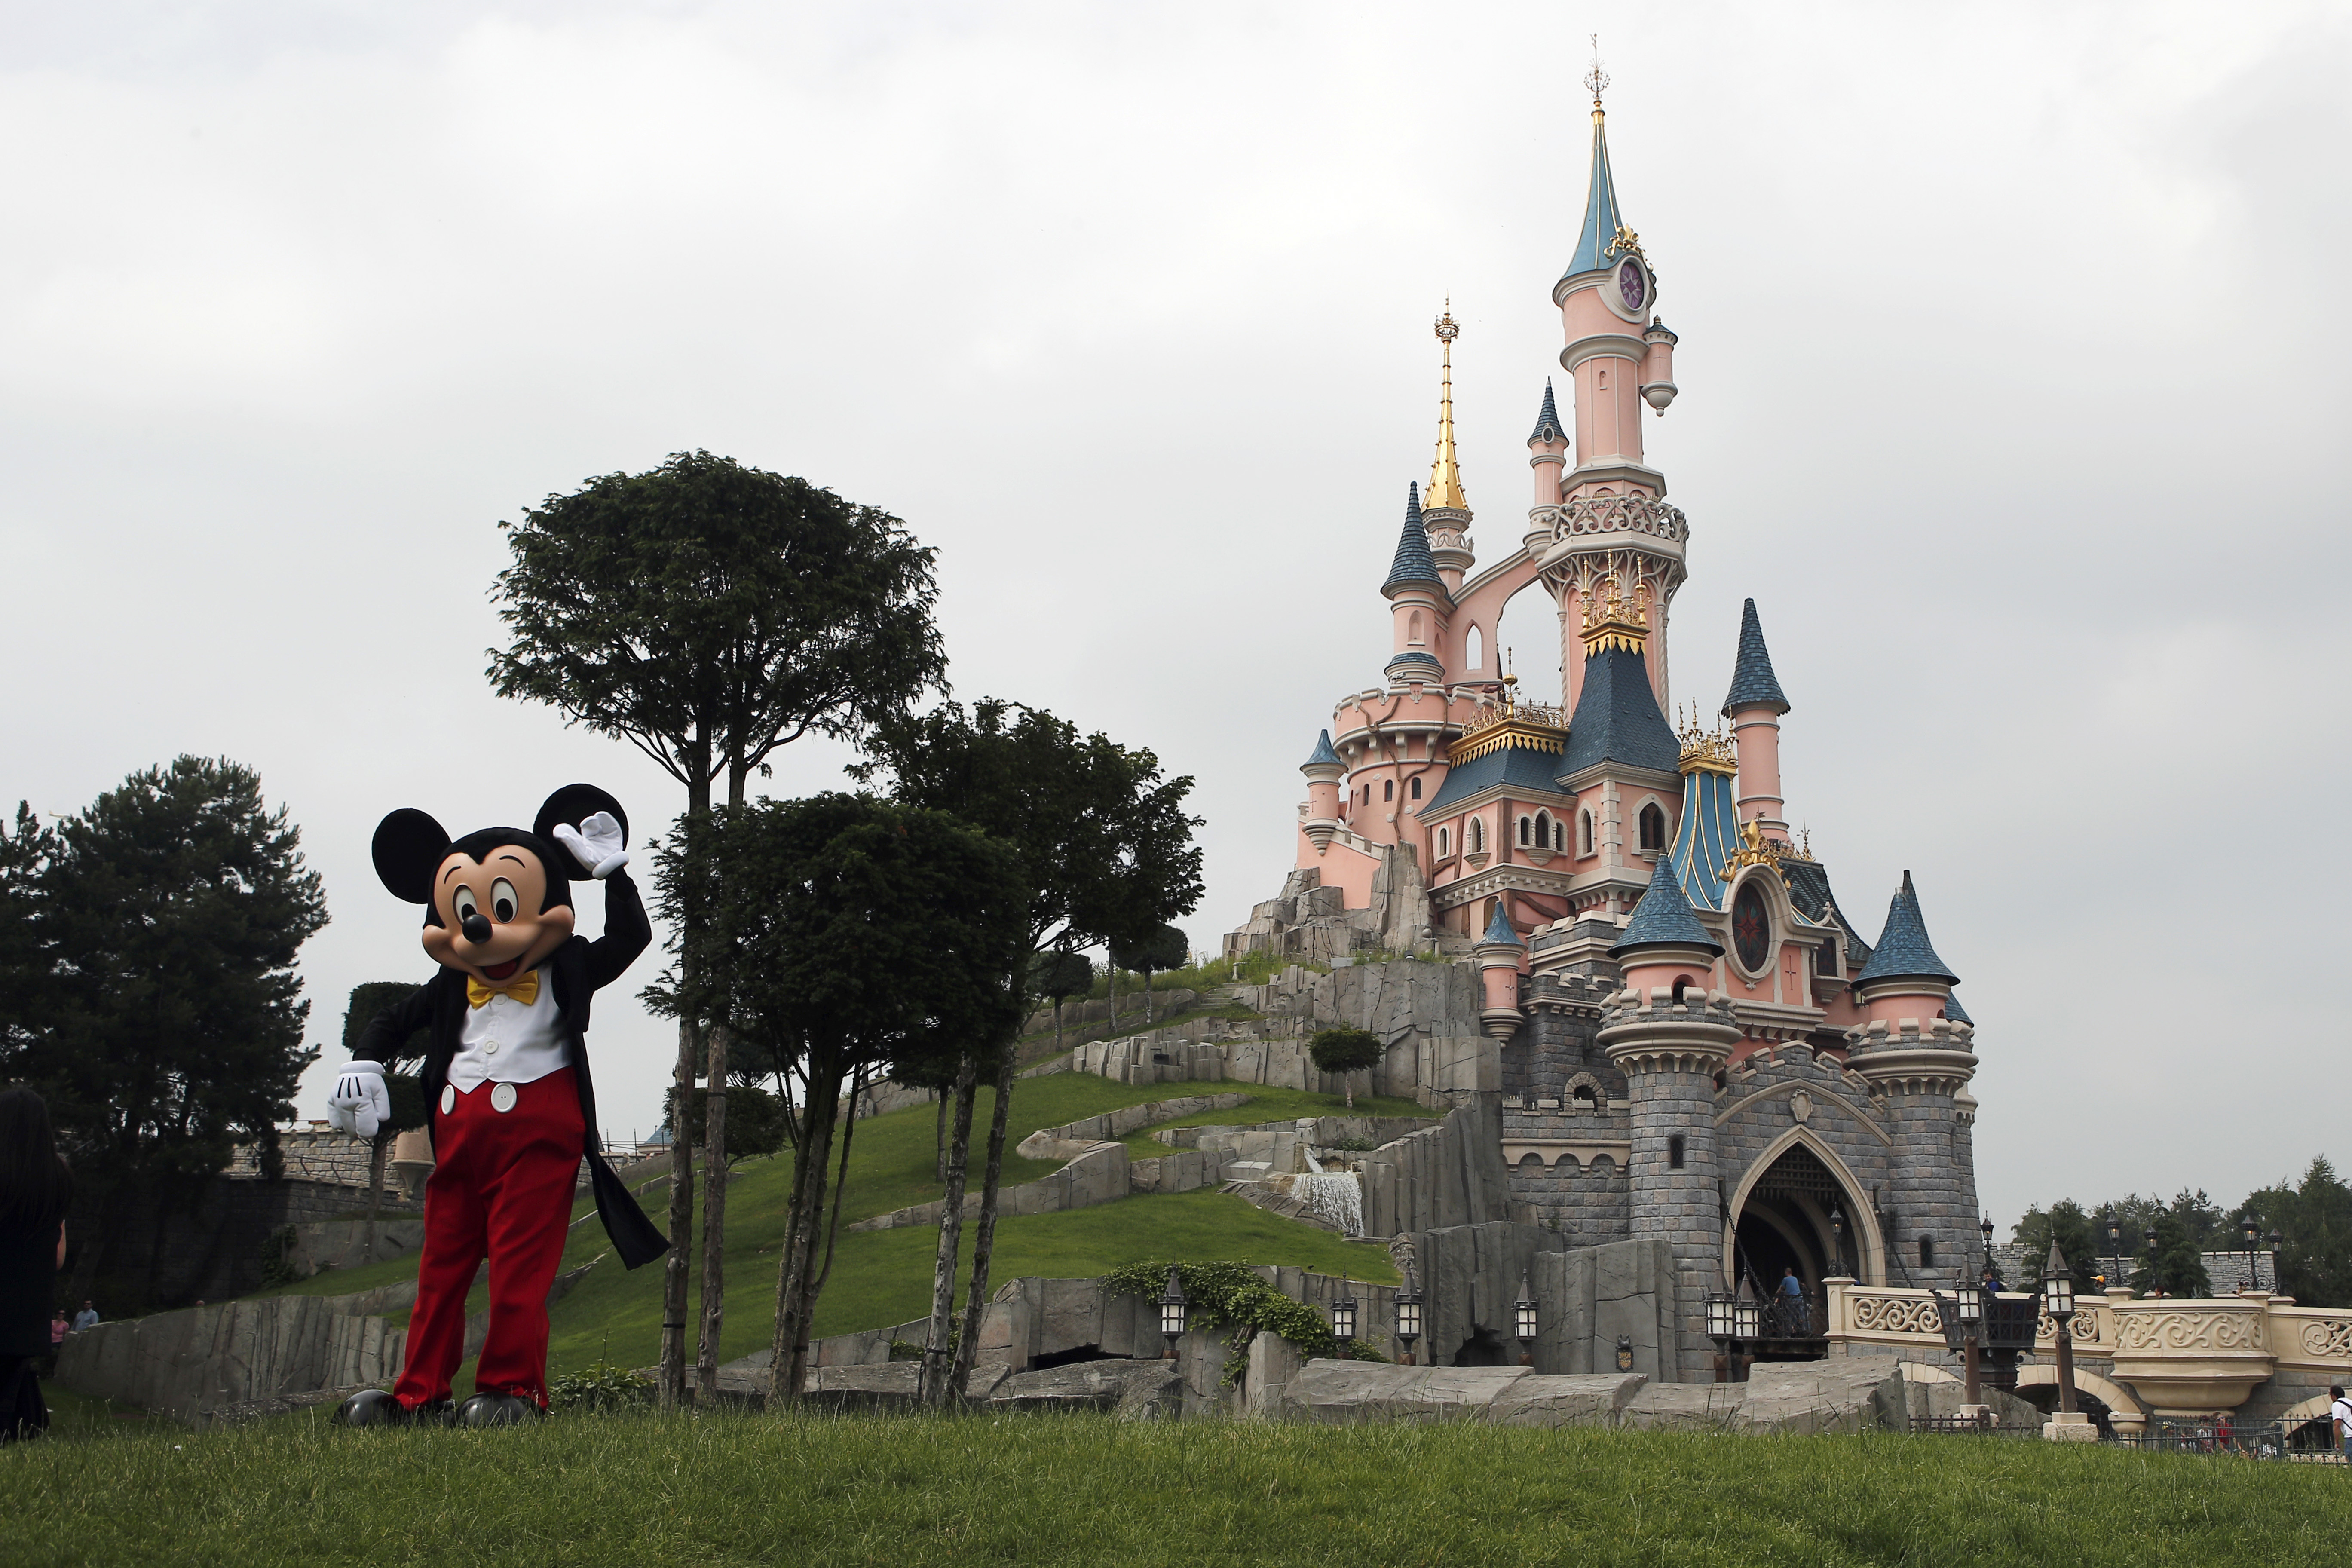 France tourism: Disneyland, Eiffel Tower top floor reopen